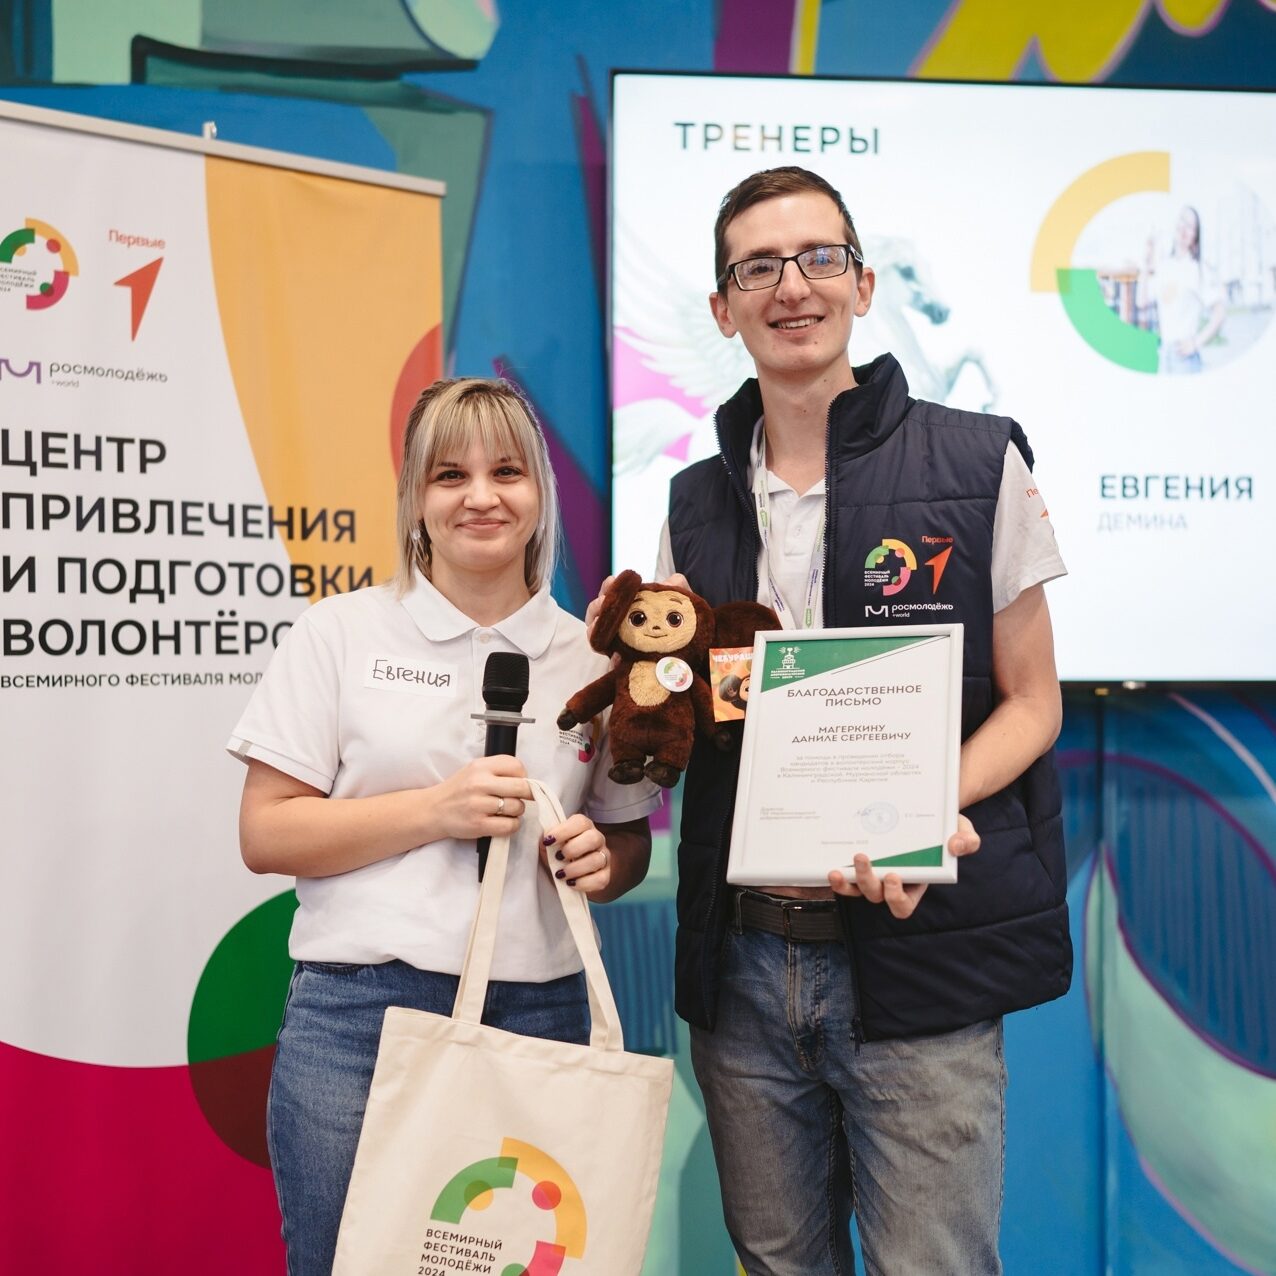 Всемирный фестиваль молодёжи в Калининграде